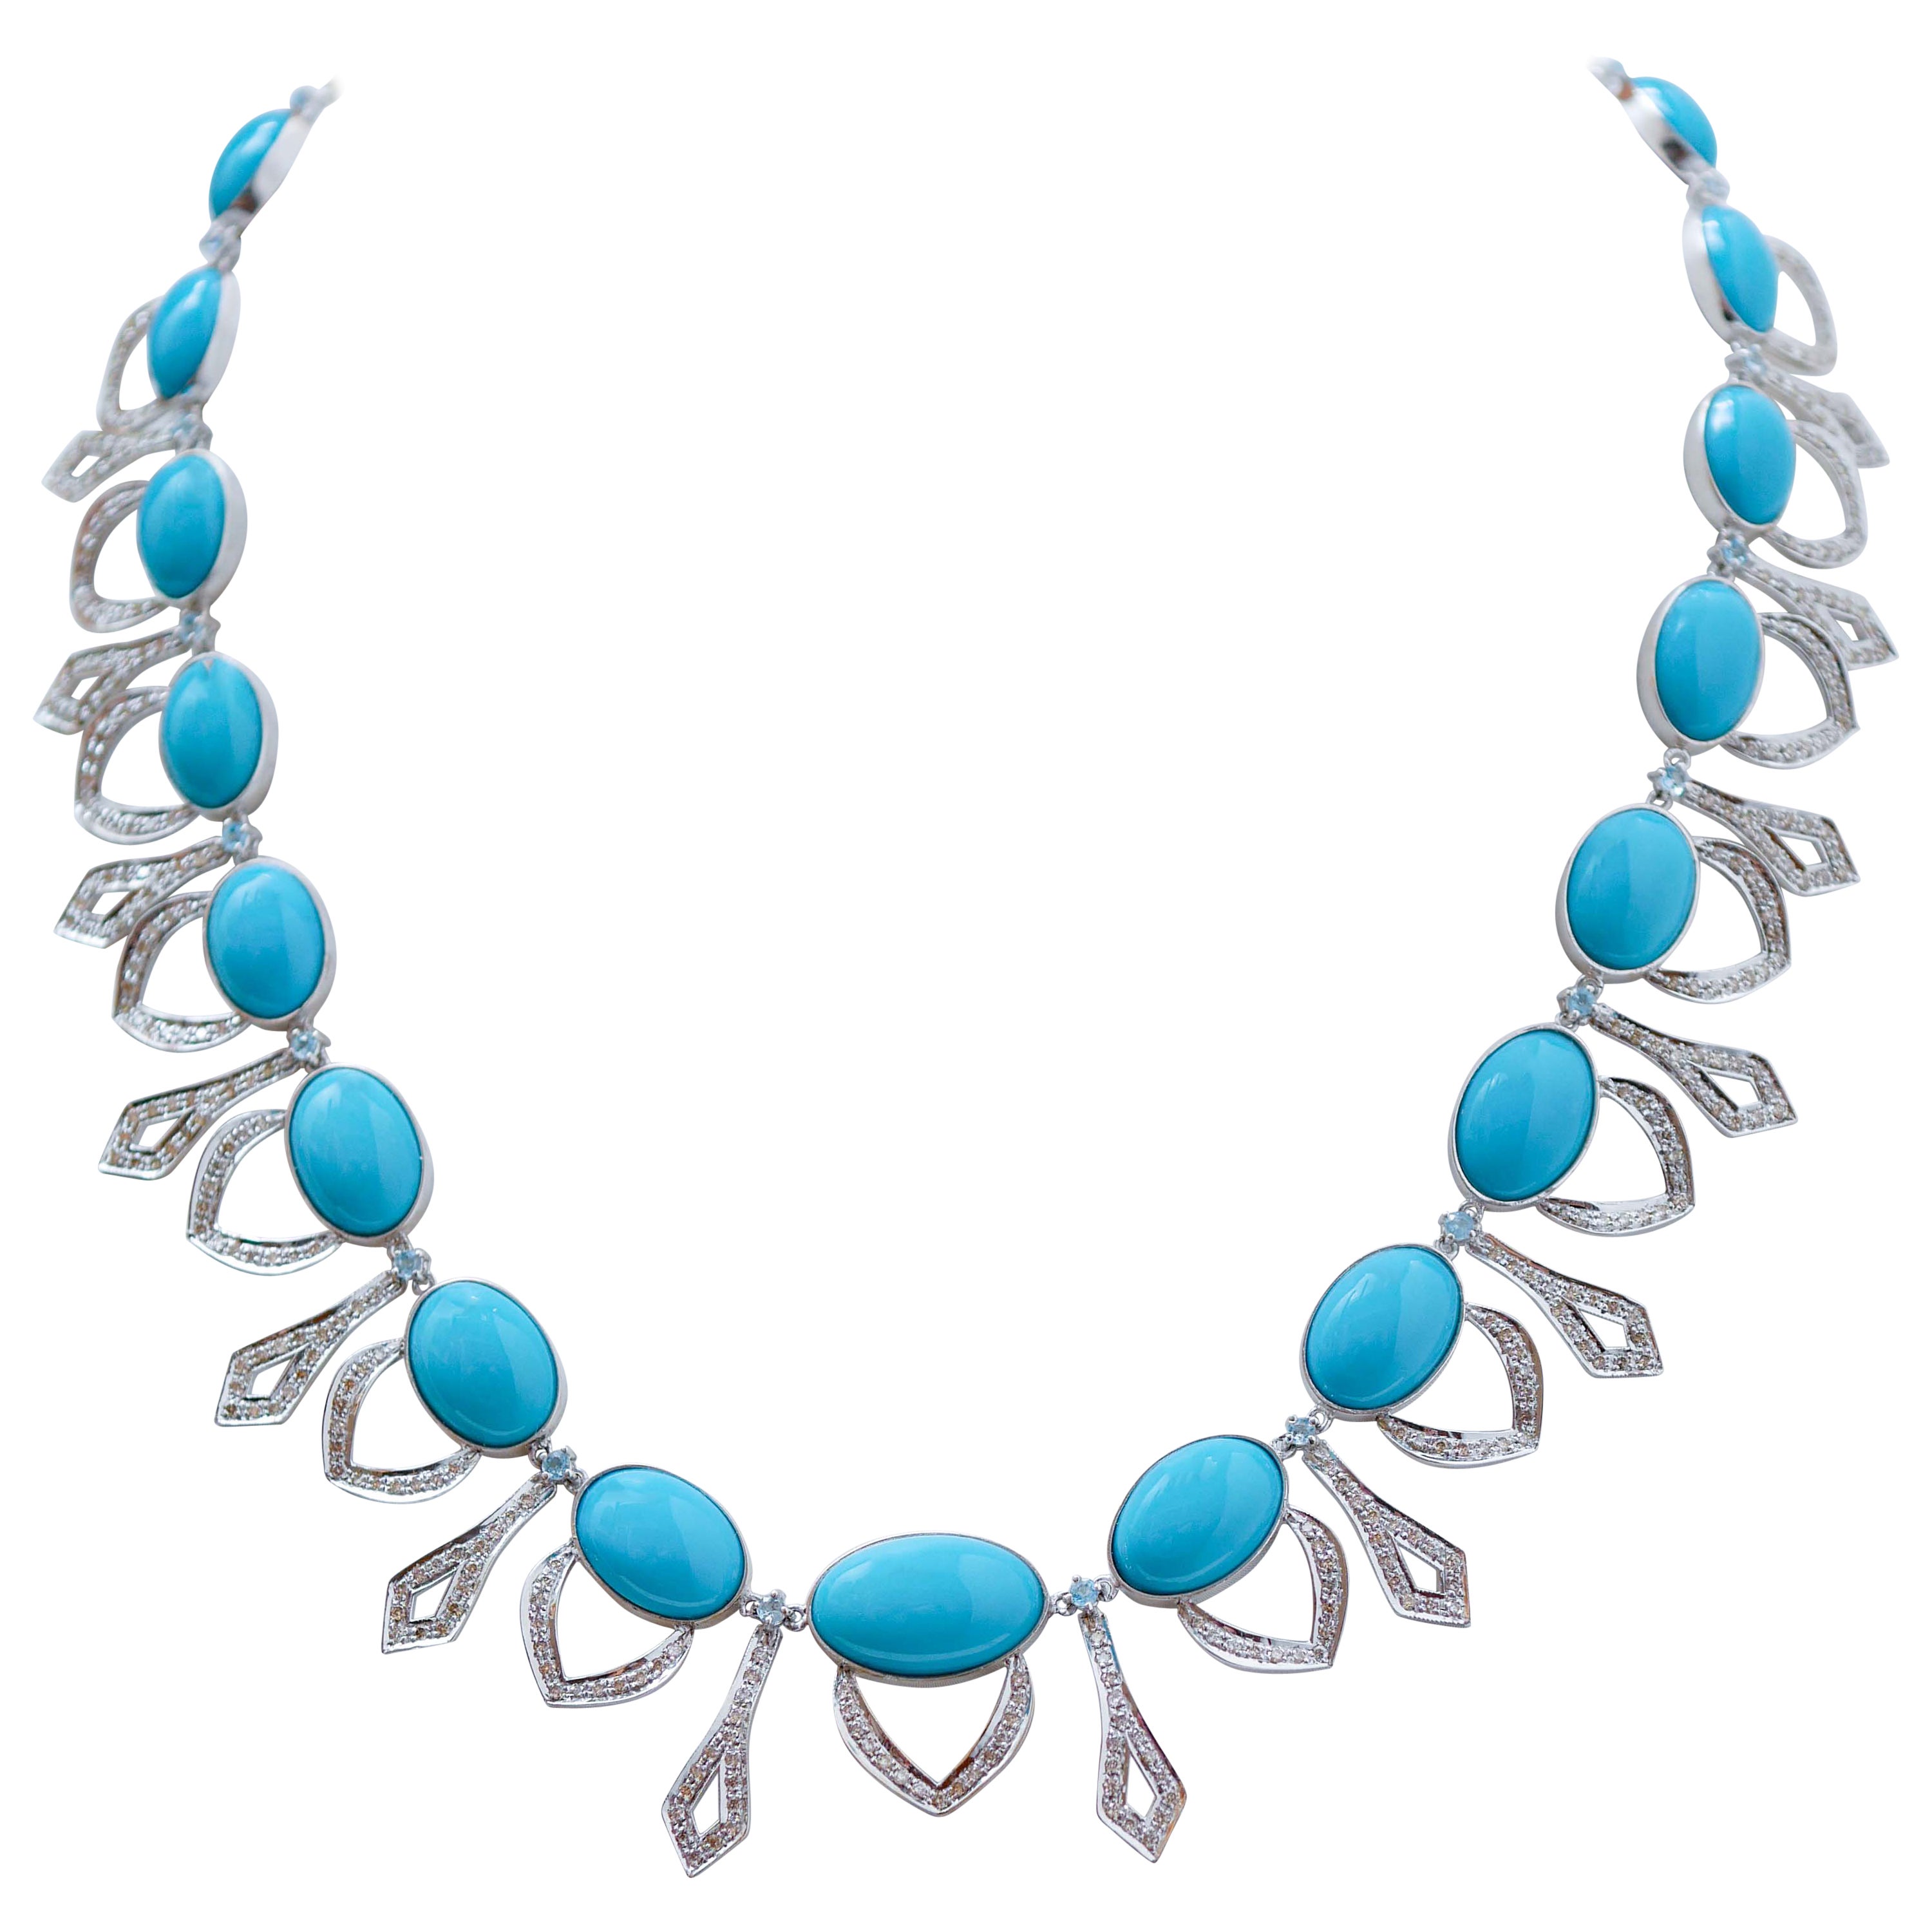 Turquoise, Topazs, Diamonds, 14 Karat White Gold Necklace.